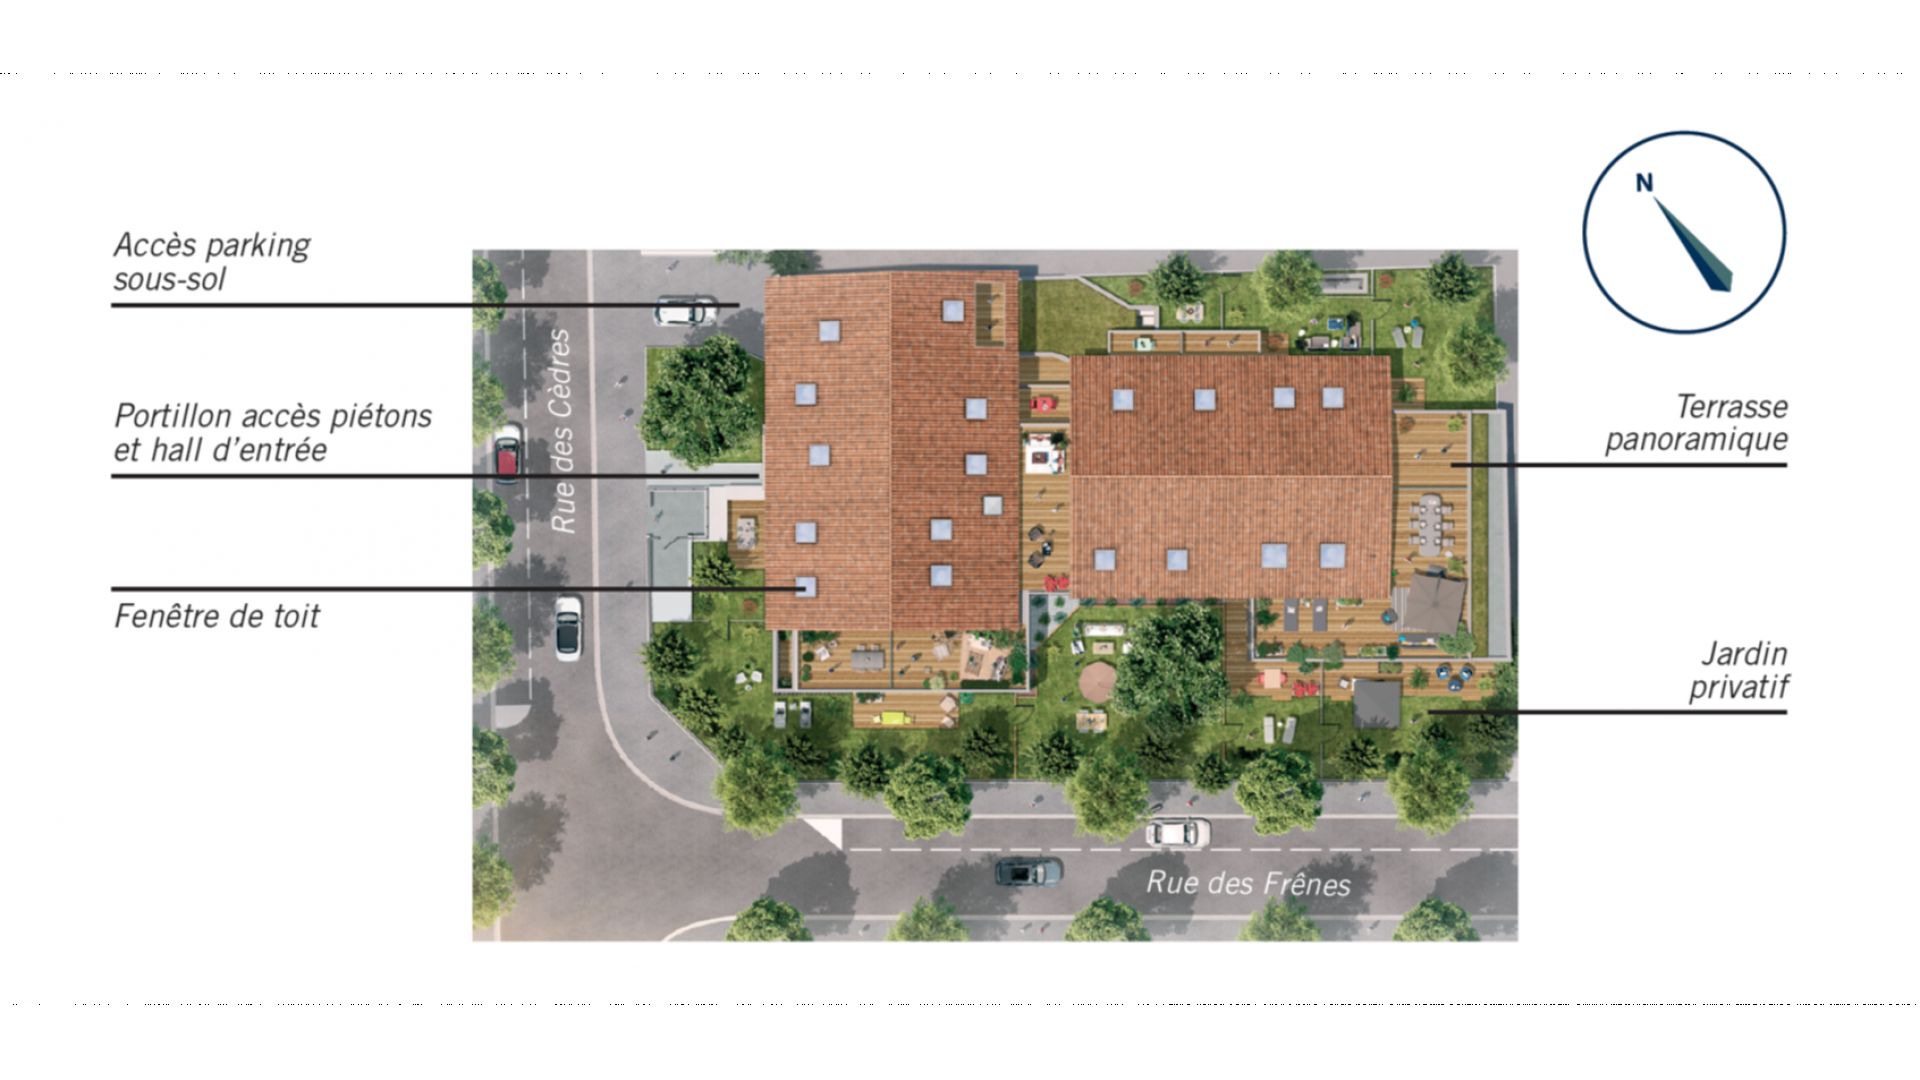 Greencity Immobilier - Résidence Villa Roméo - achat appartements neufs du T2 au T4 duplex - Toulouse - Rangueil - 31400 - plan de masse